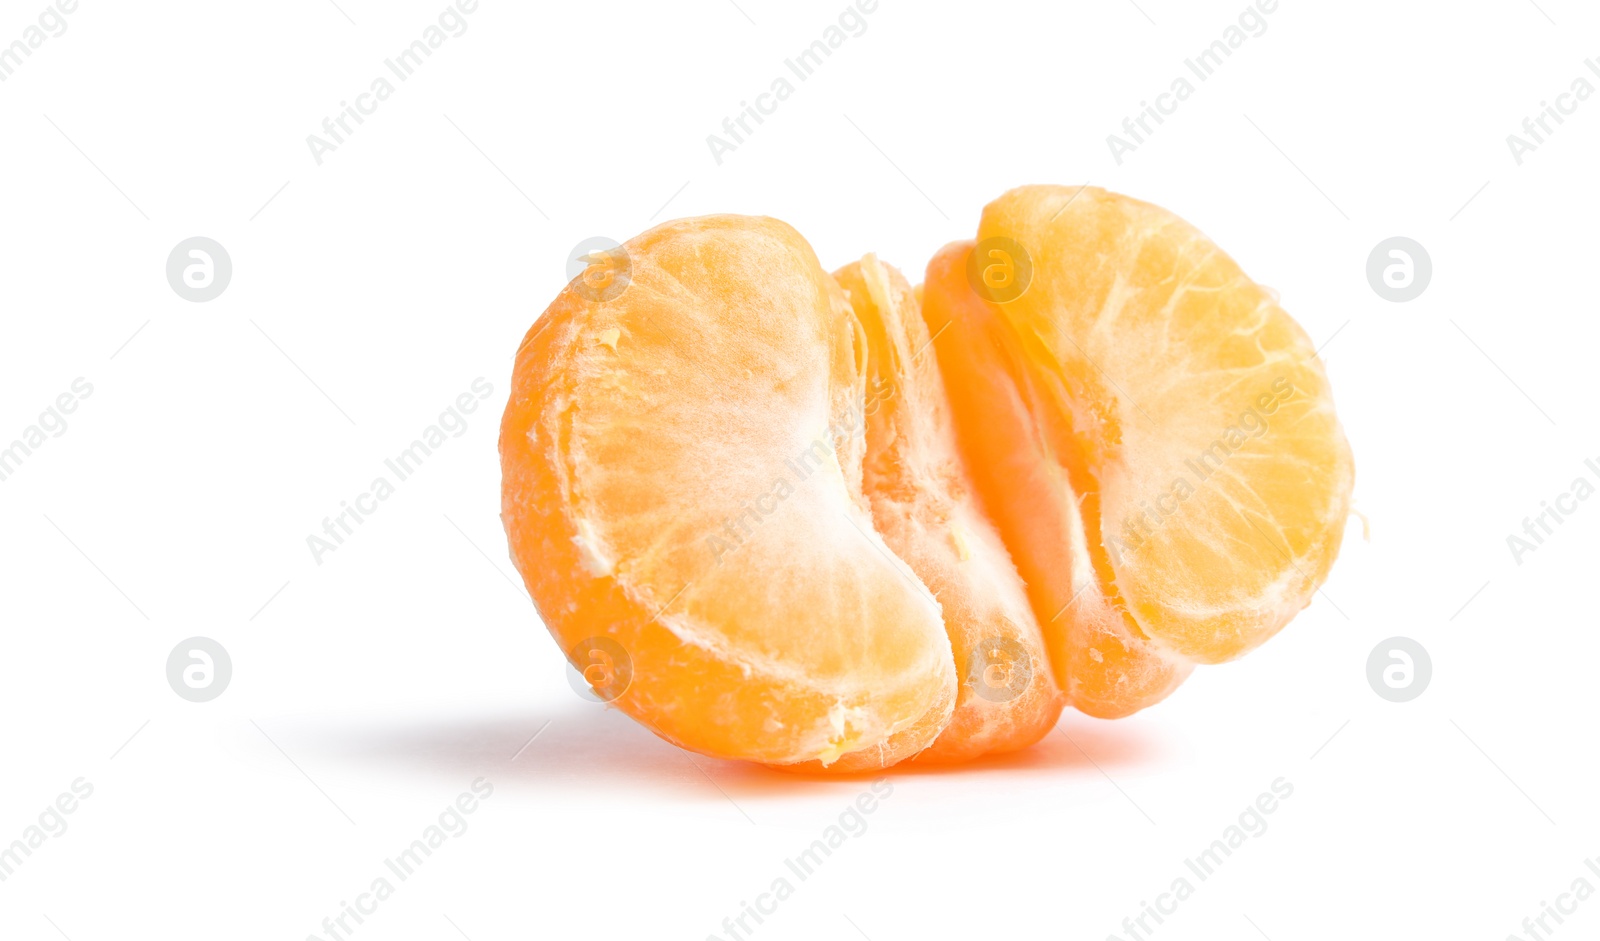 Photo of Half of peeled ripe tangerine on white background